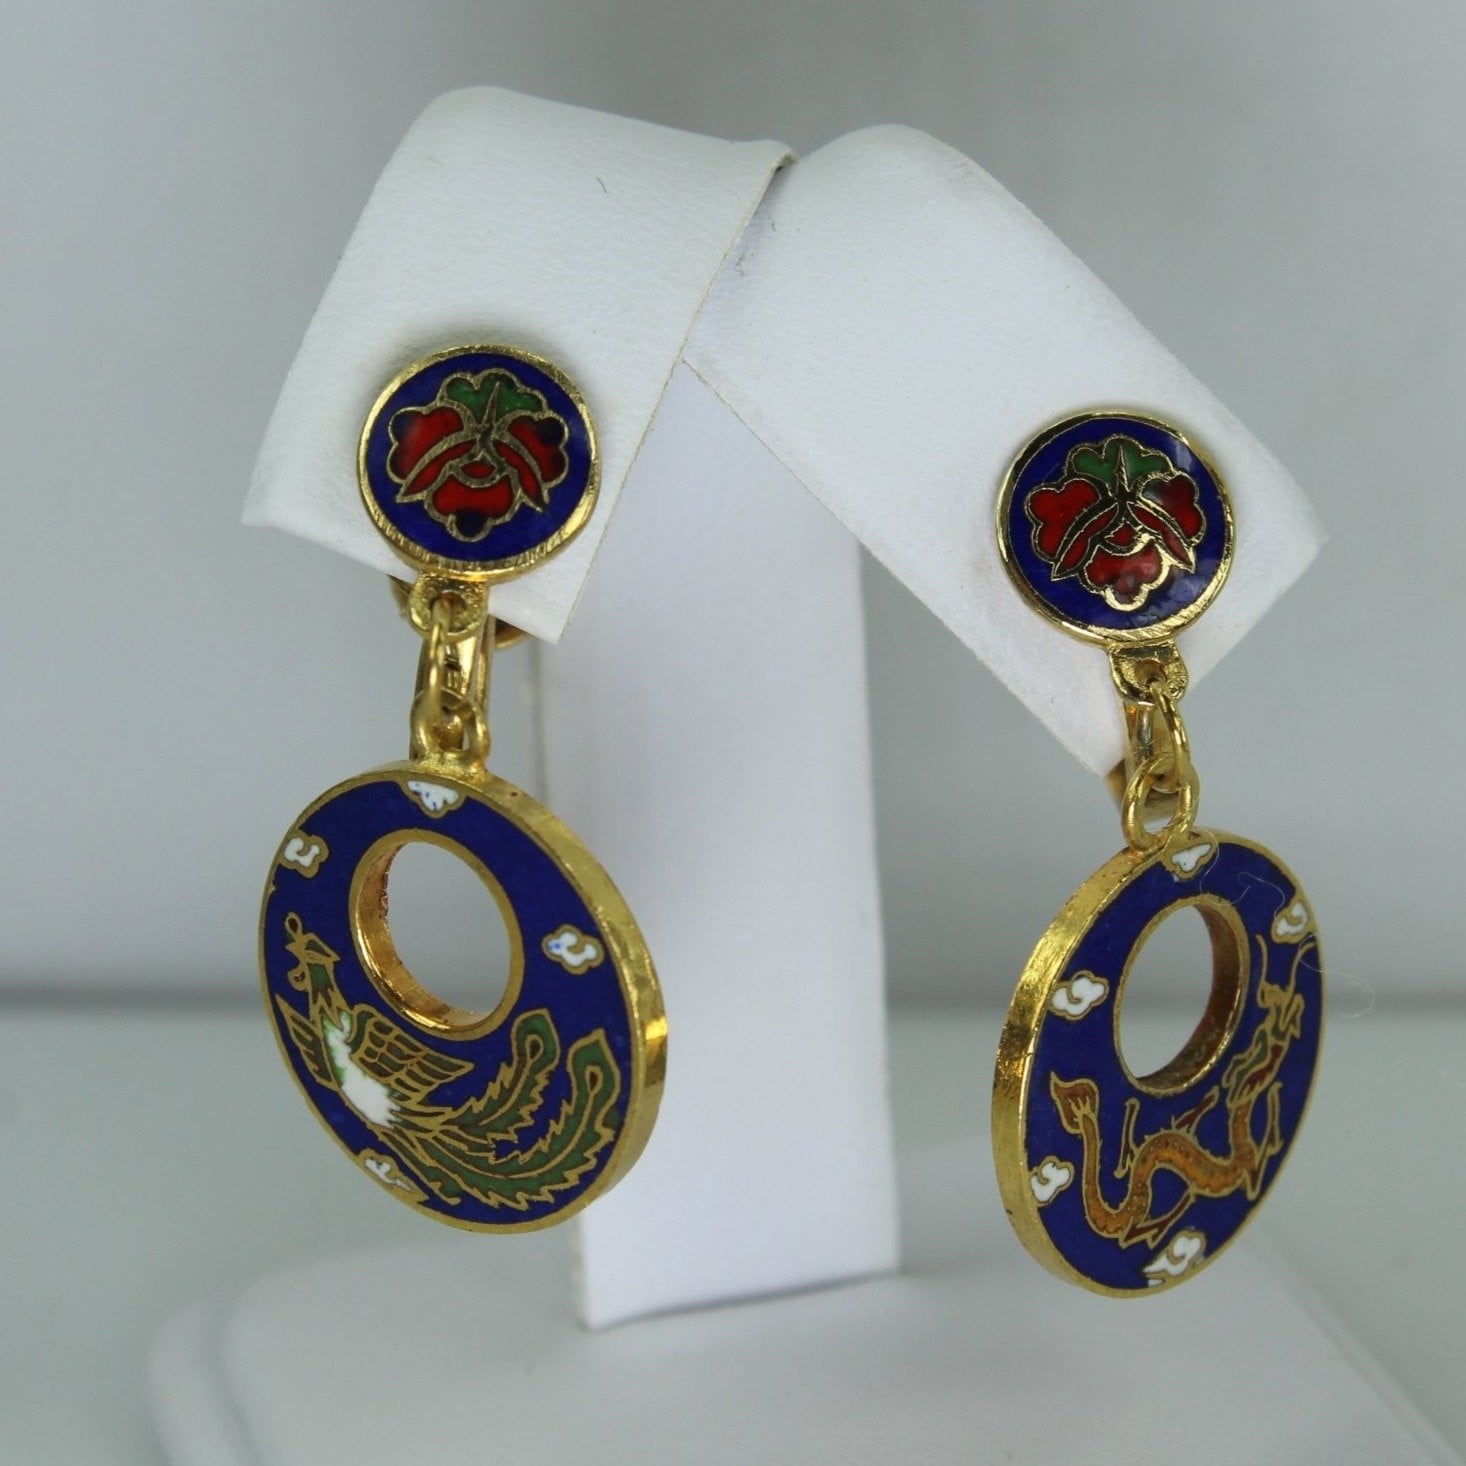 Vintage Cloisonne Set Intricate Design Dragon Phoenix Necklace Earrings Fantastic Colors red blue